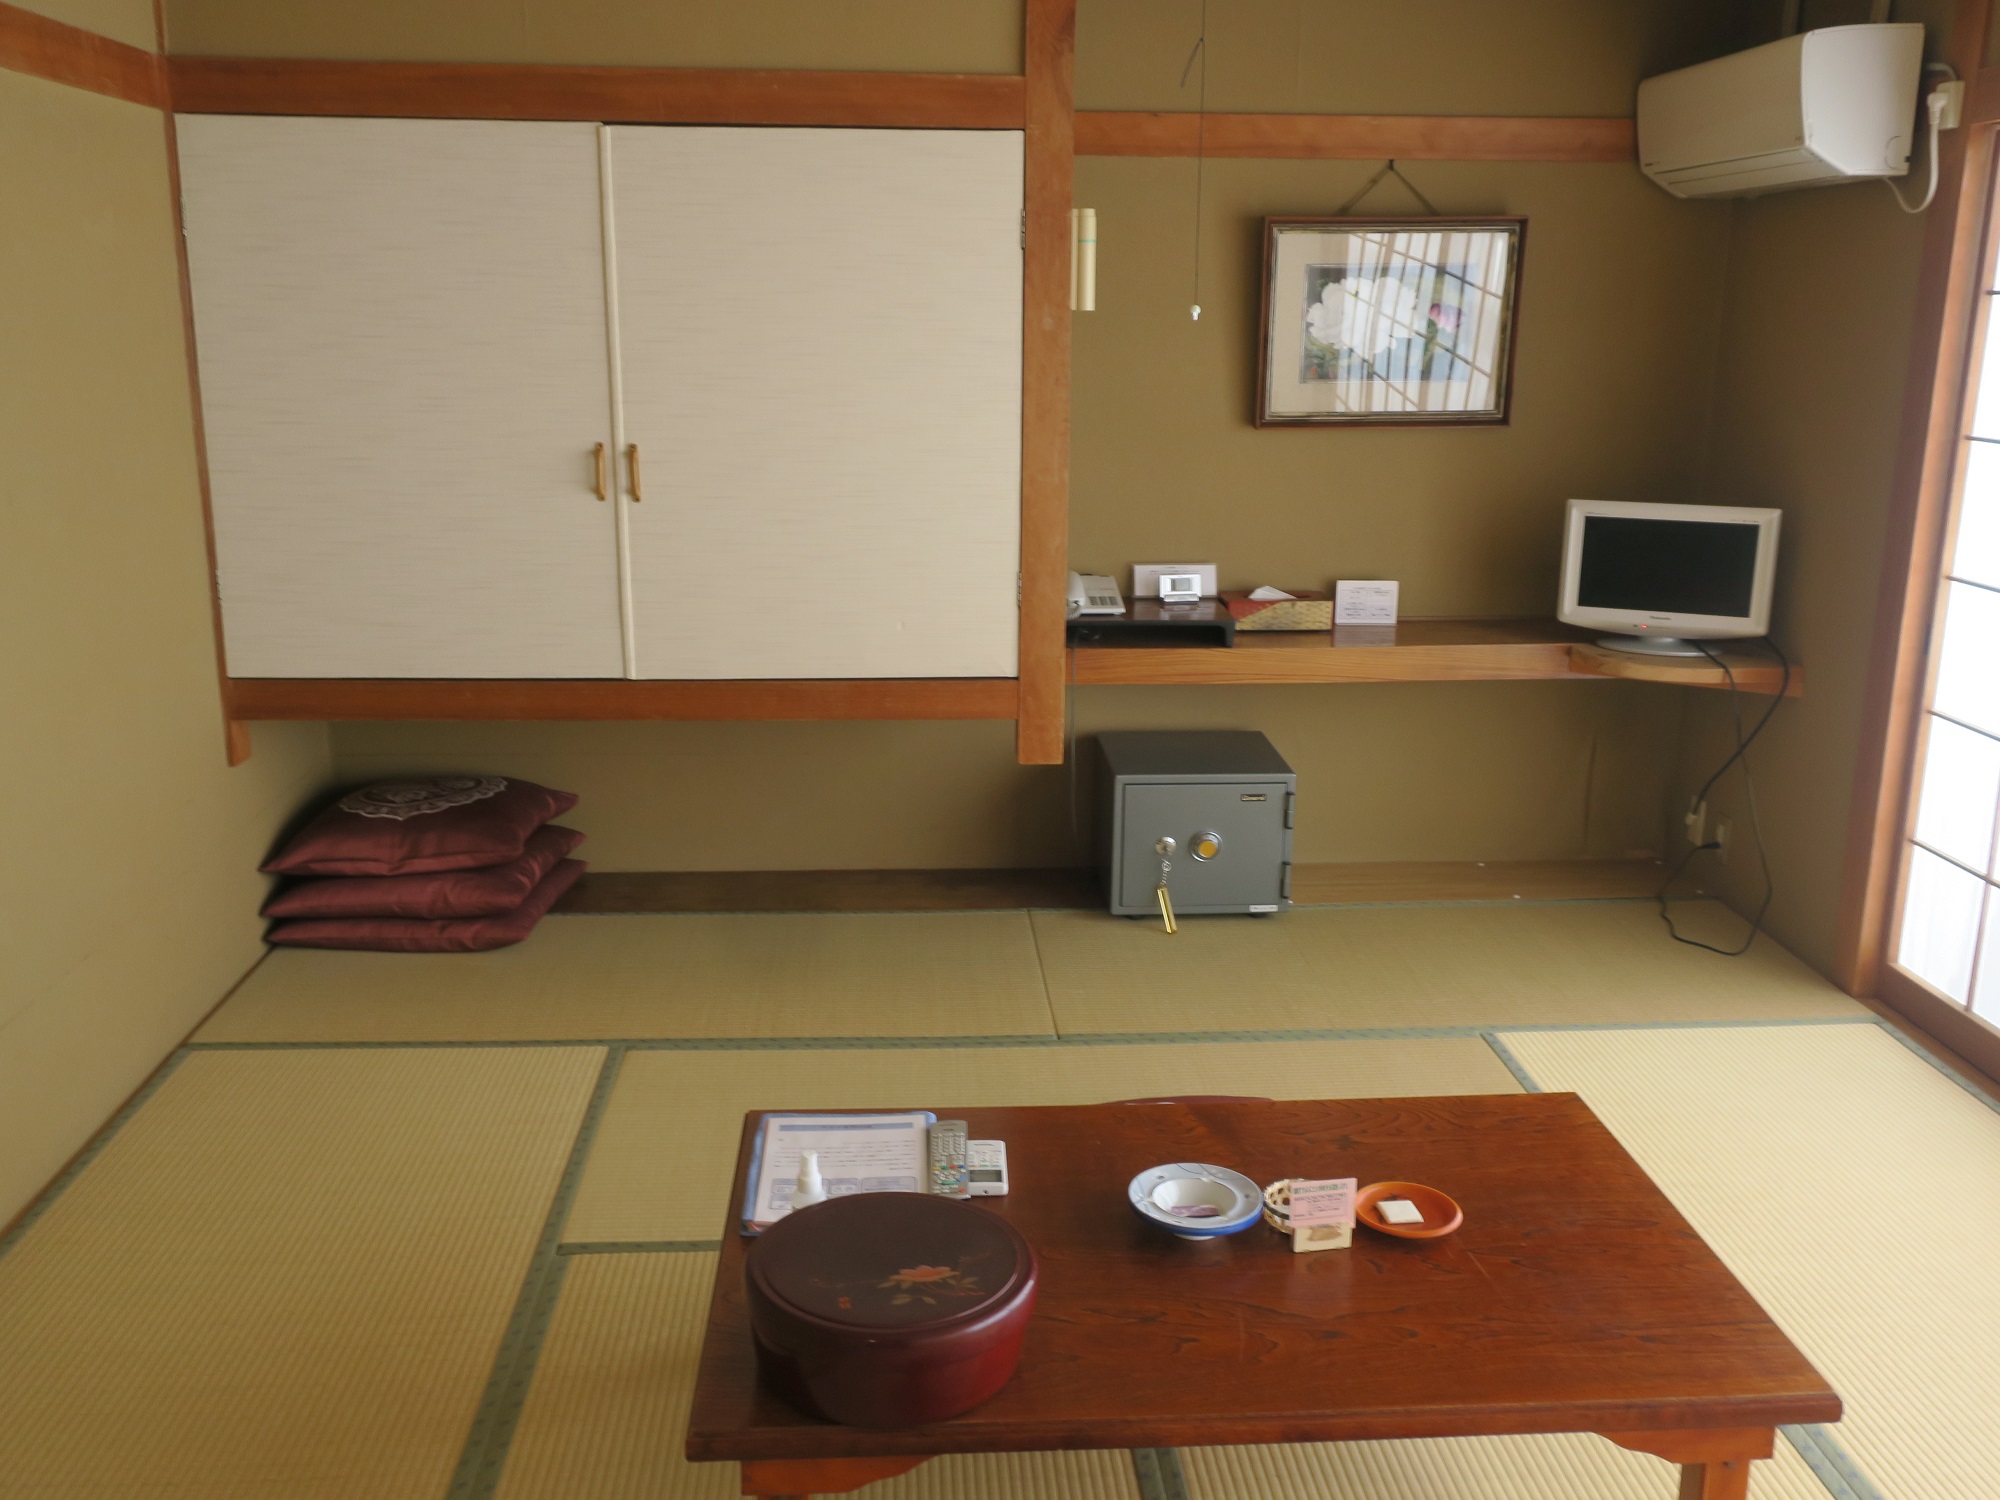 野沢温泉ホテル 和室10畳 バス・トイレなし 玄関から奥を撮影